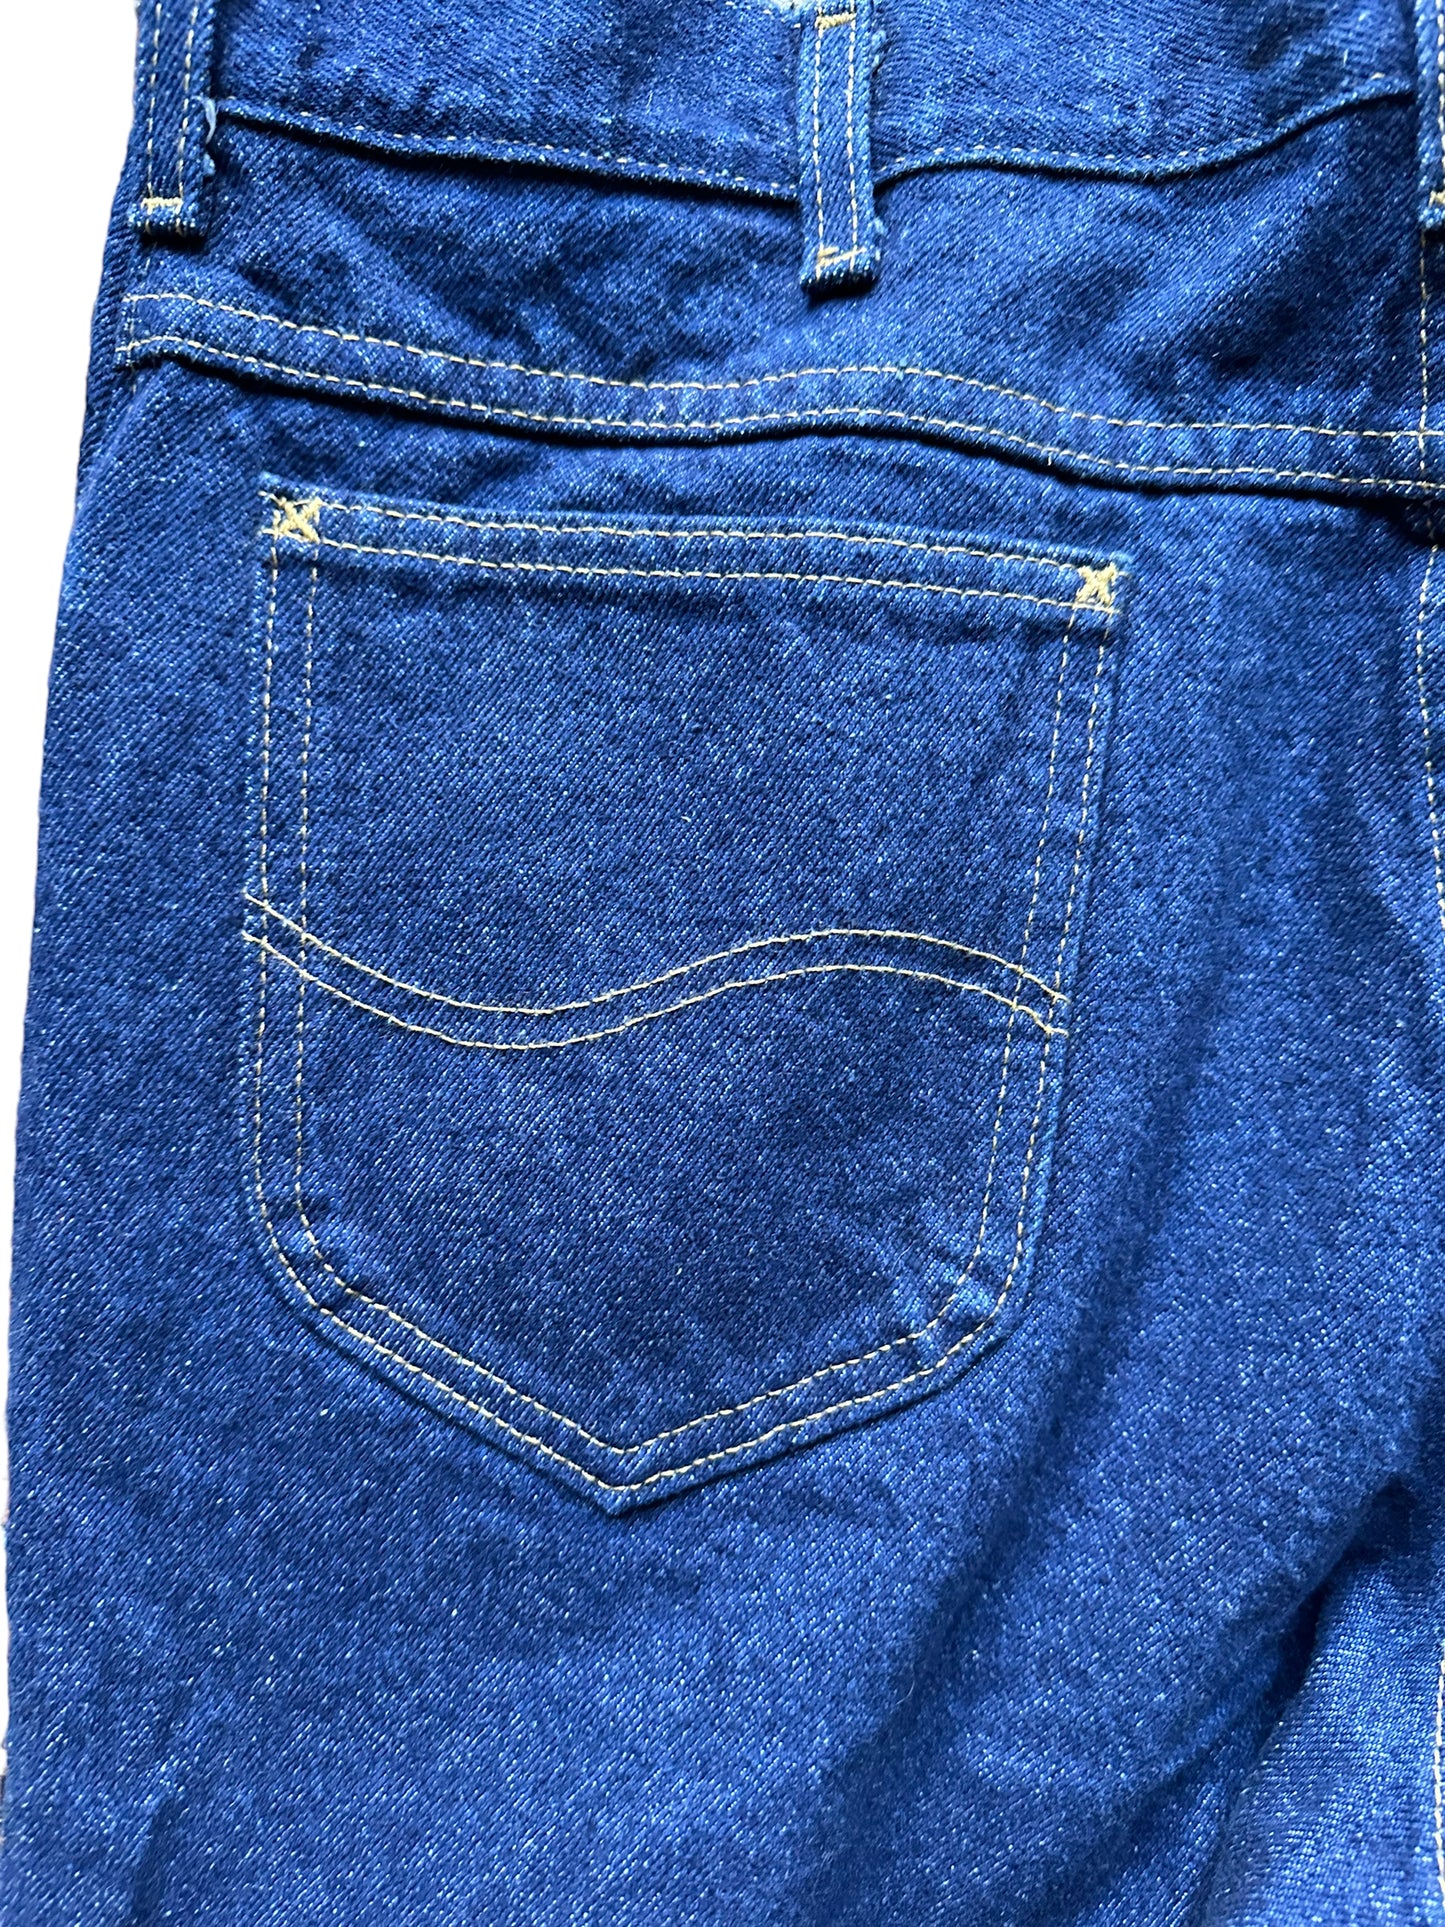 Back left pocket view ofVintage Deadstock Union Made Lee Jeans 37x32" | Seattle Vintage Denim | Barn Owl Vintage Dungarees